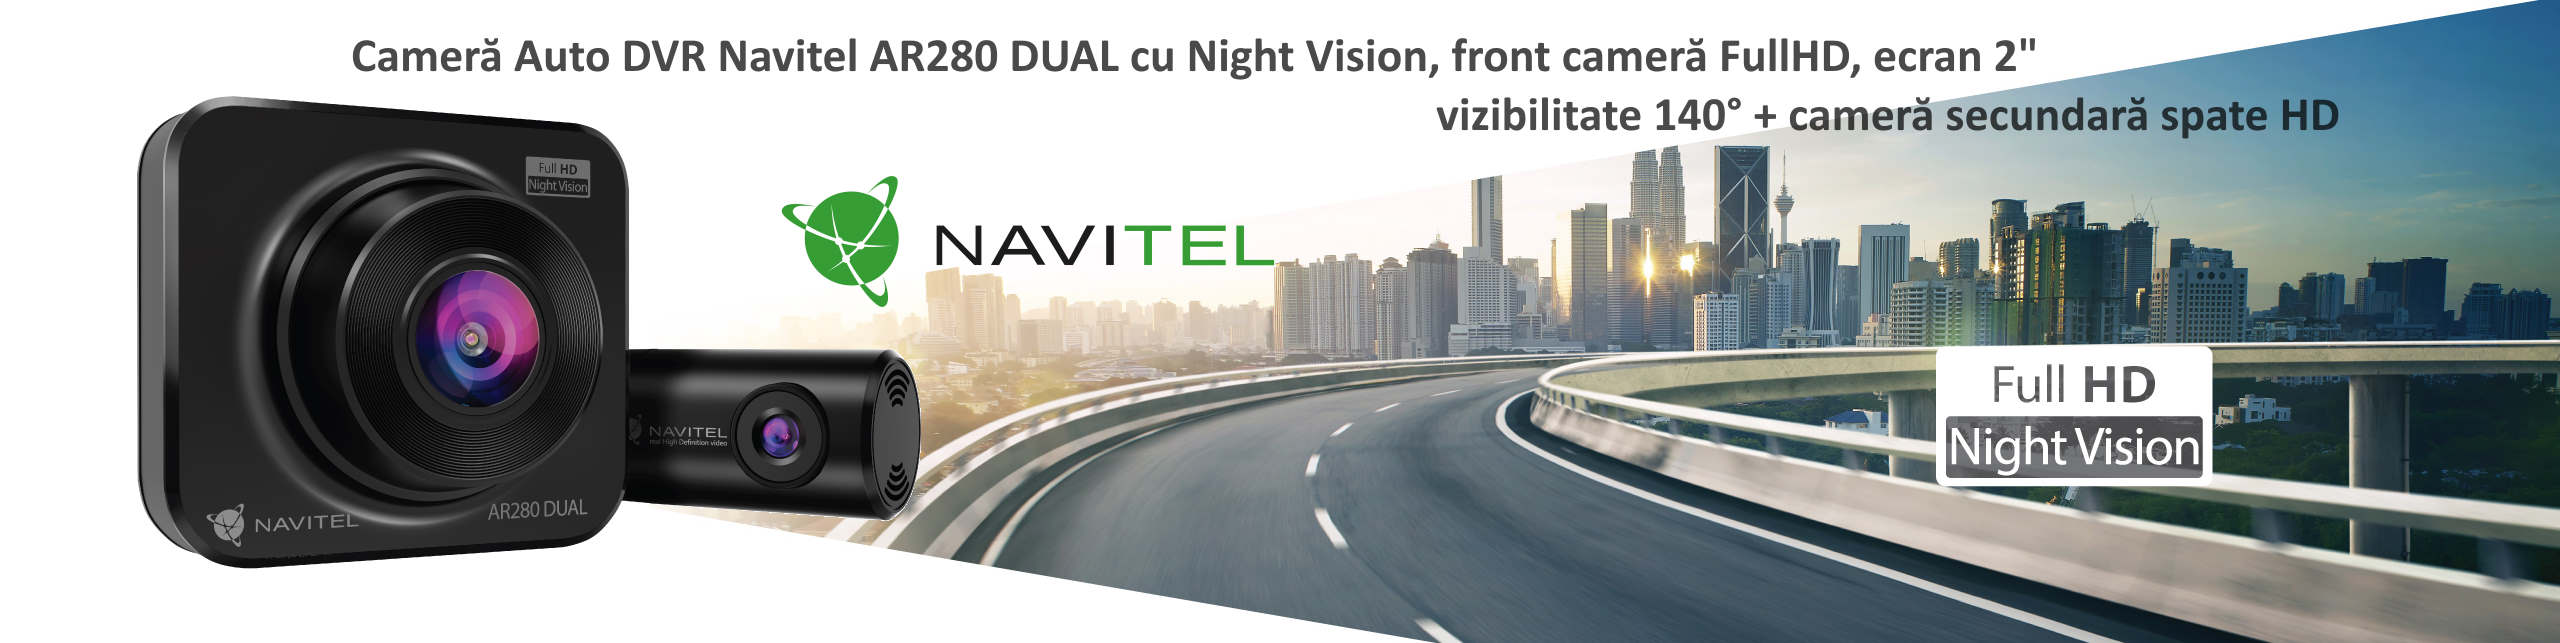 Camera Auto DVR Navitel AR280 DUAL cu Night Vision, front camera FullHD, ecran 2", vizibilitate 140° + camera secundara spate HD